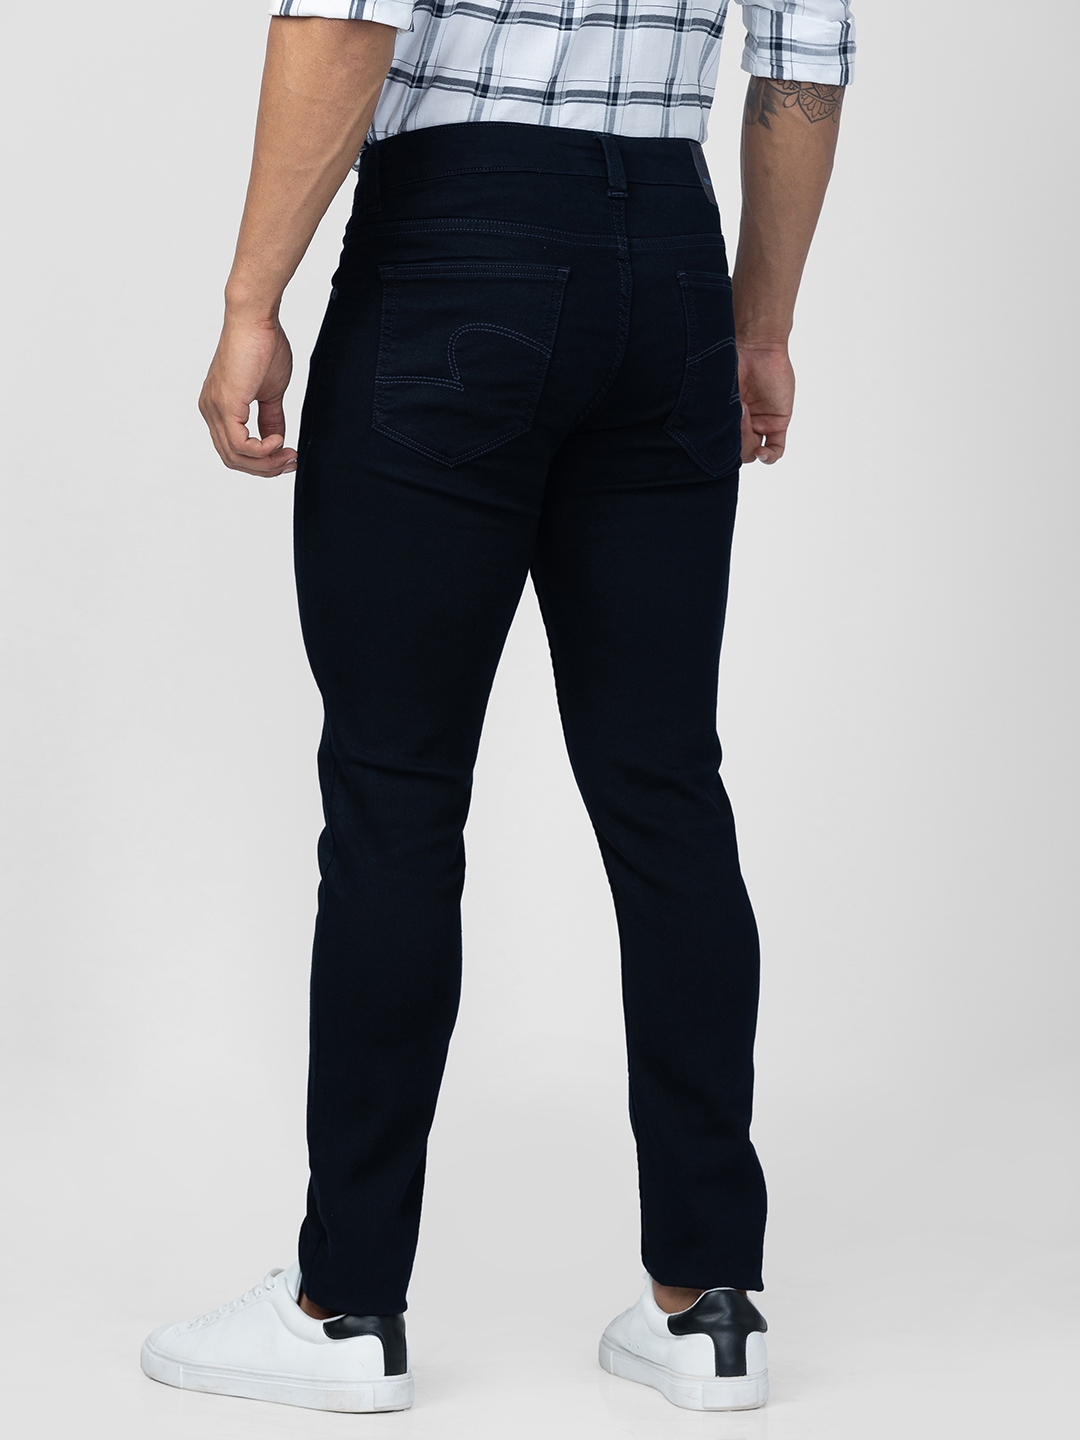 spykar | Men's Blue Cotton Jeans 2